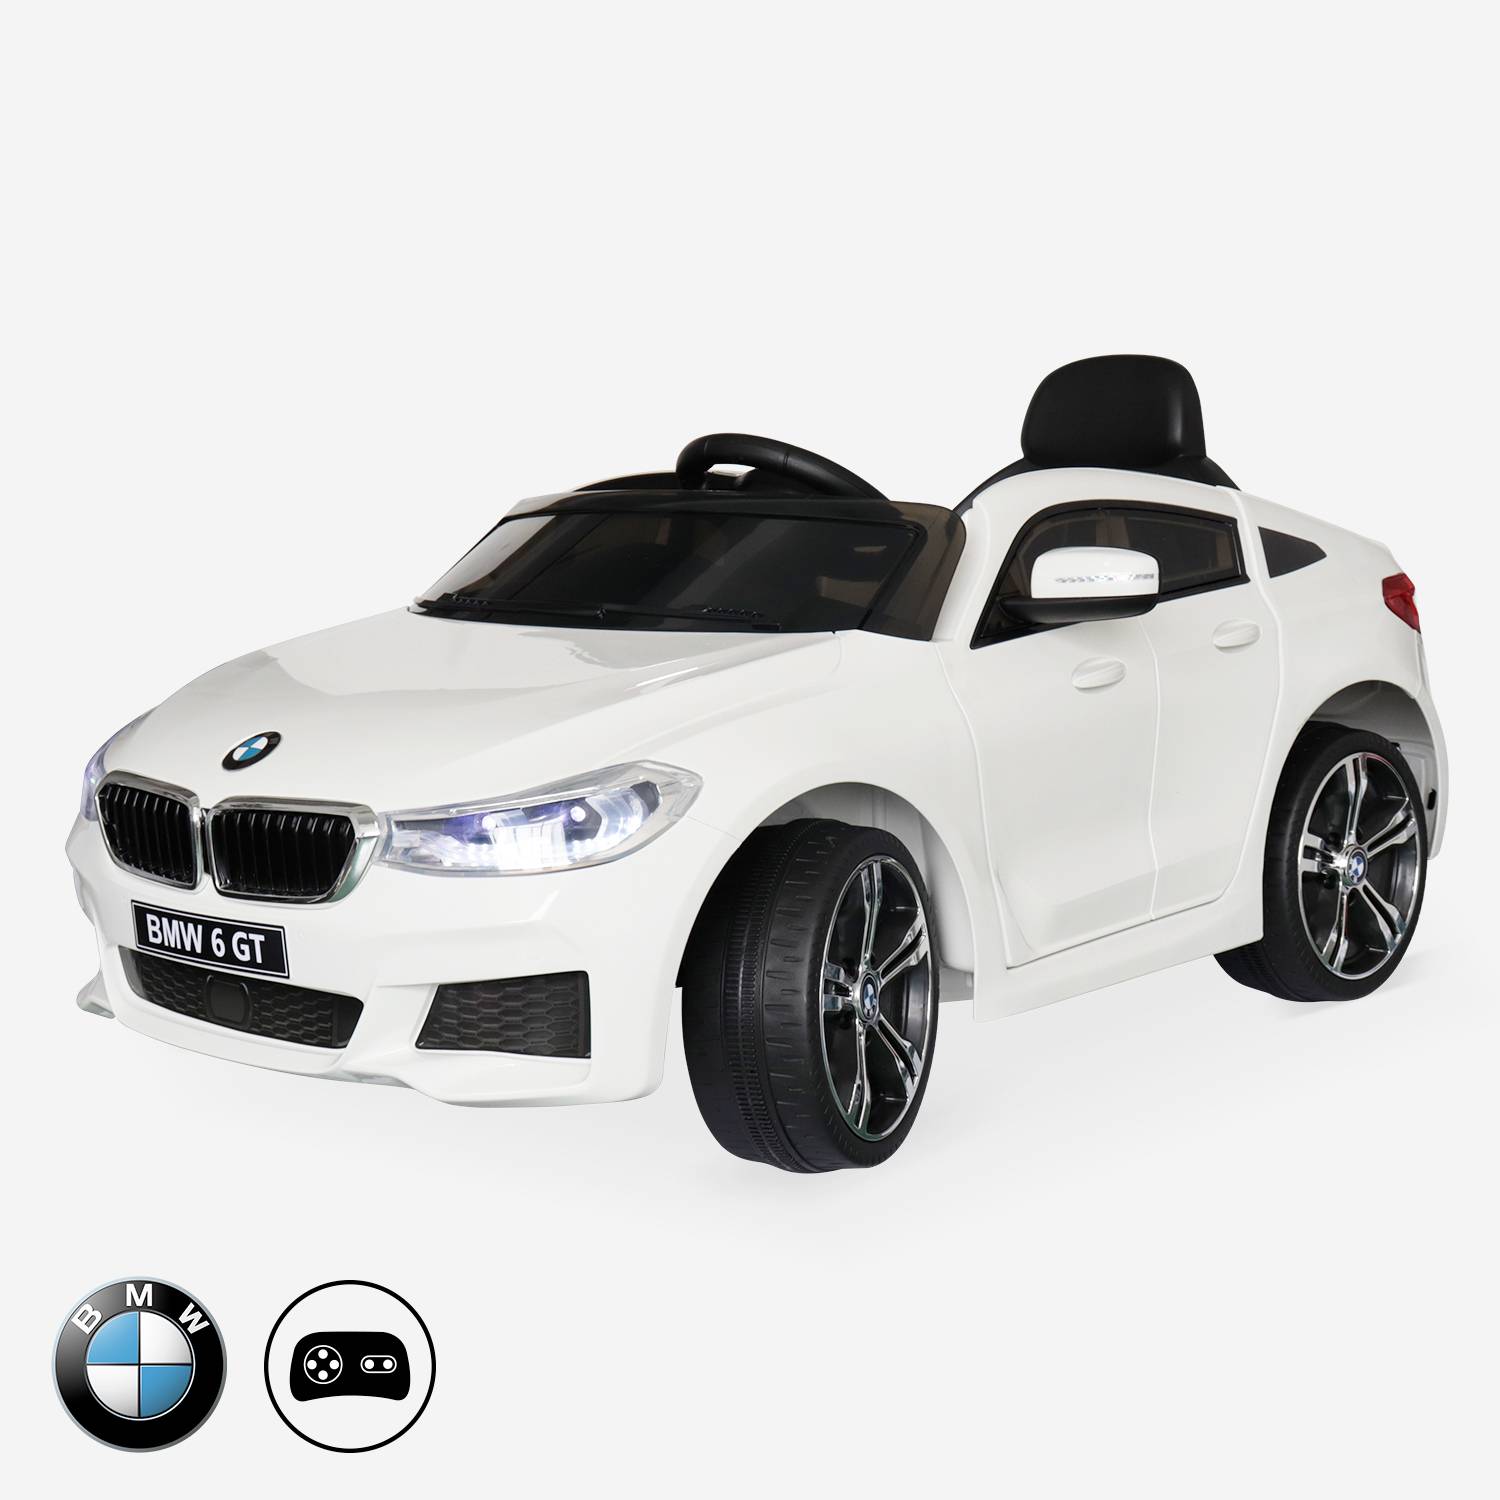 BMW GT6 Gran Turismo wit, elektrische auto 12V, 1 plaats, cabriolet voor kinderen met autoradio en afstandsbediening Photo1